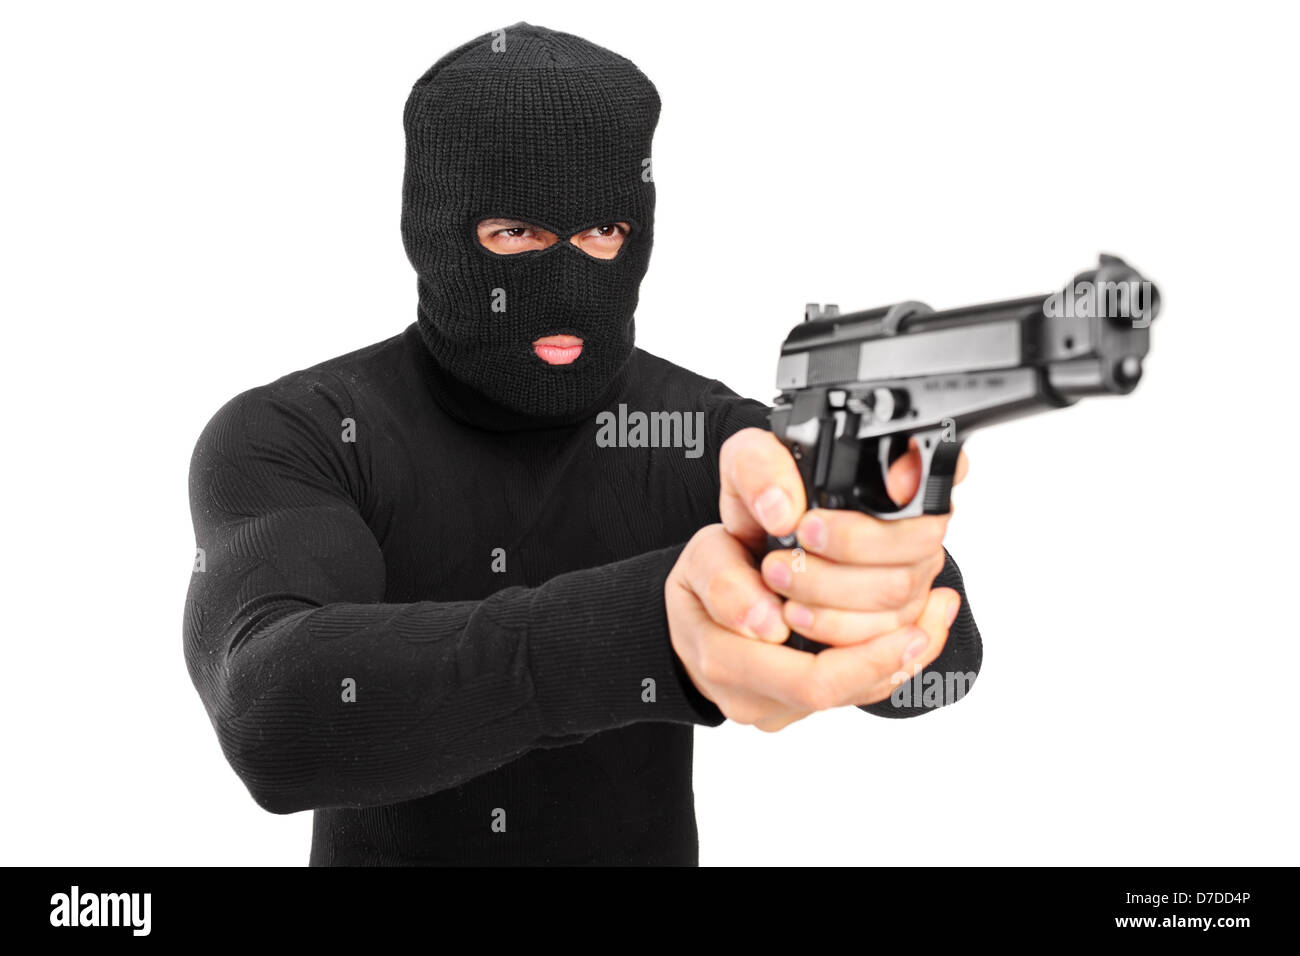 Horny hayden robber image